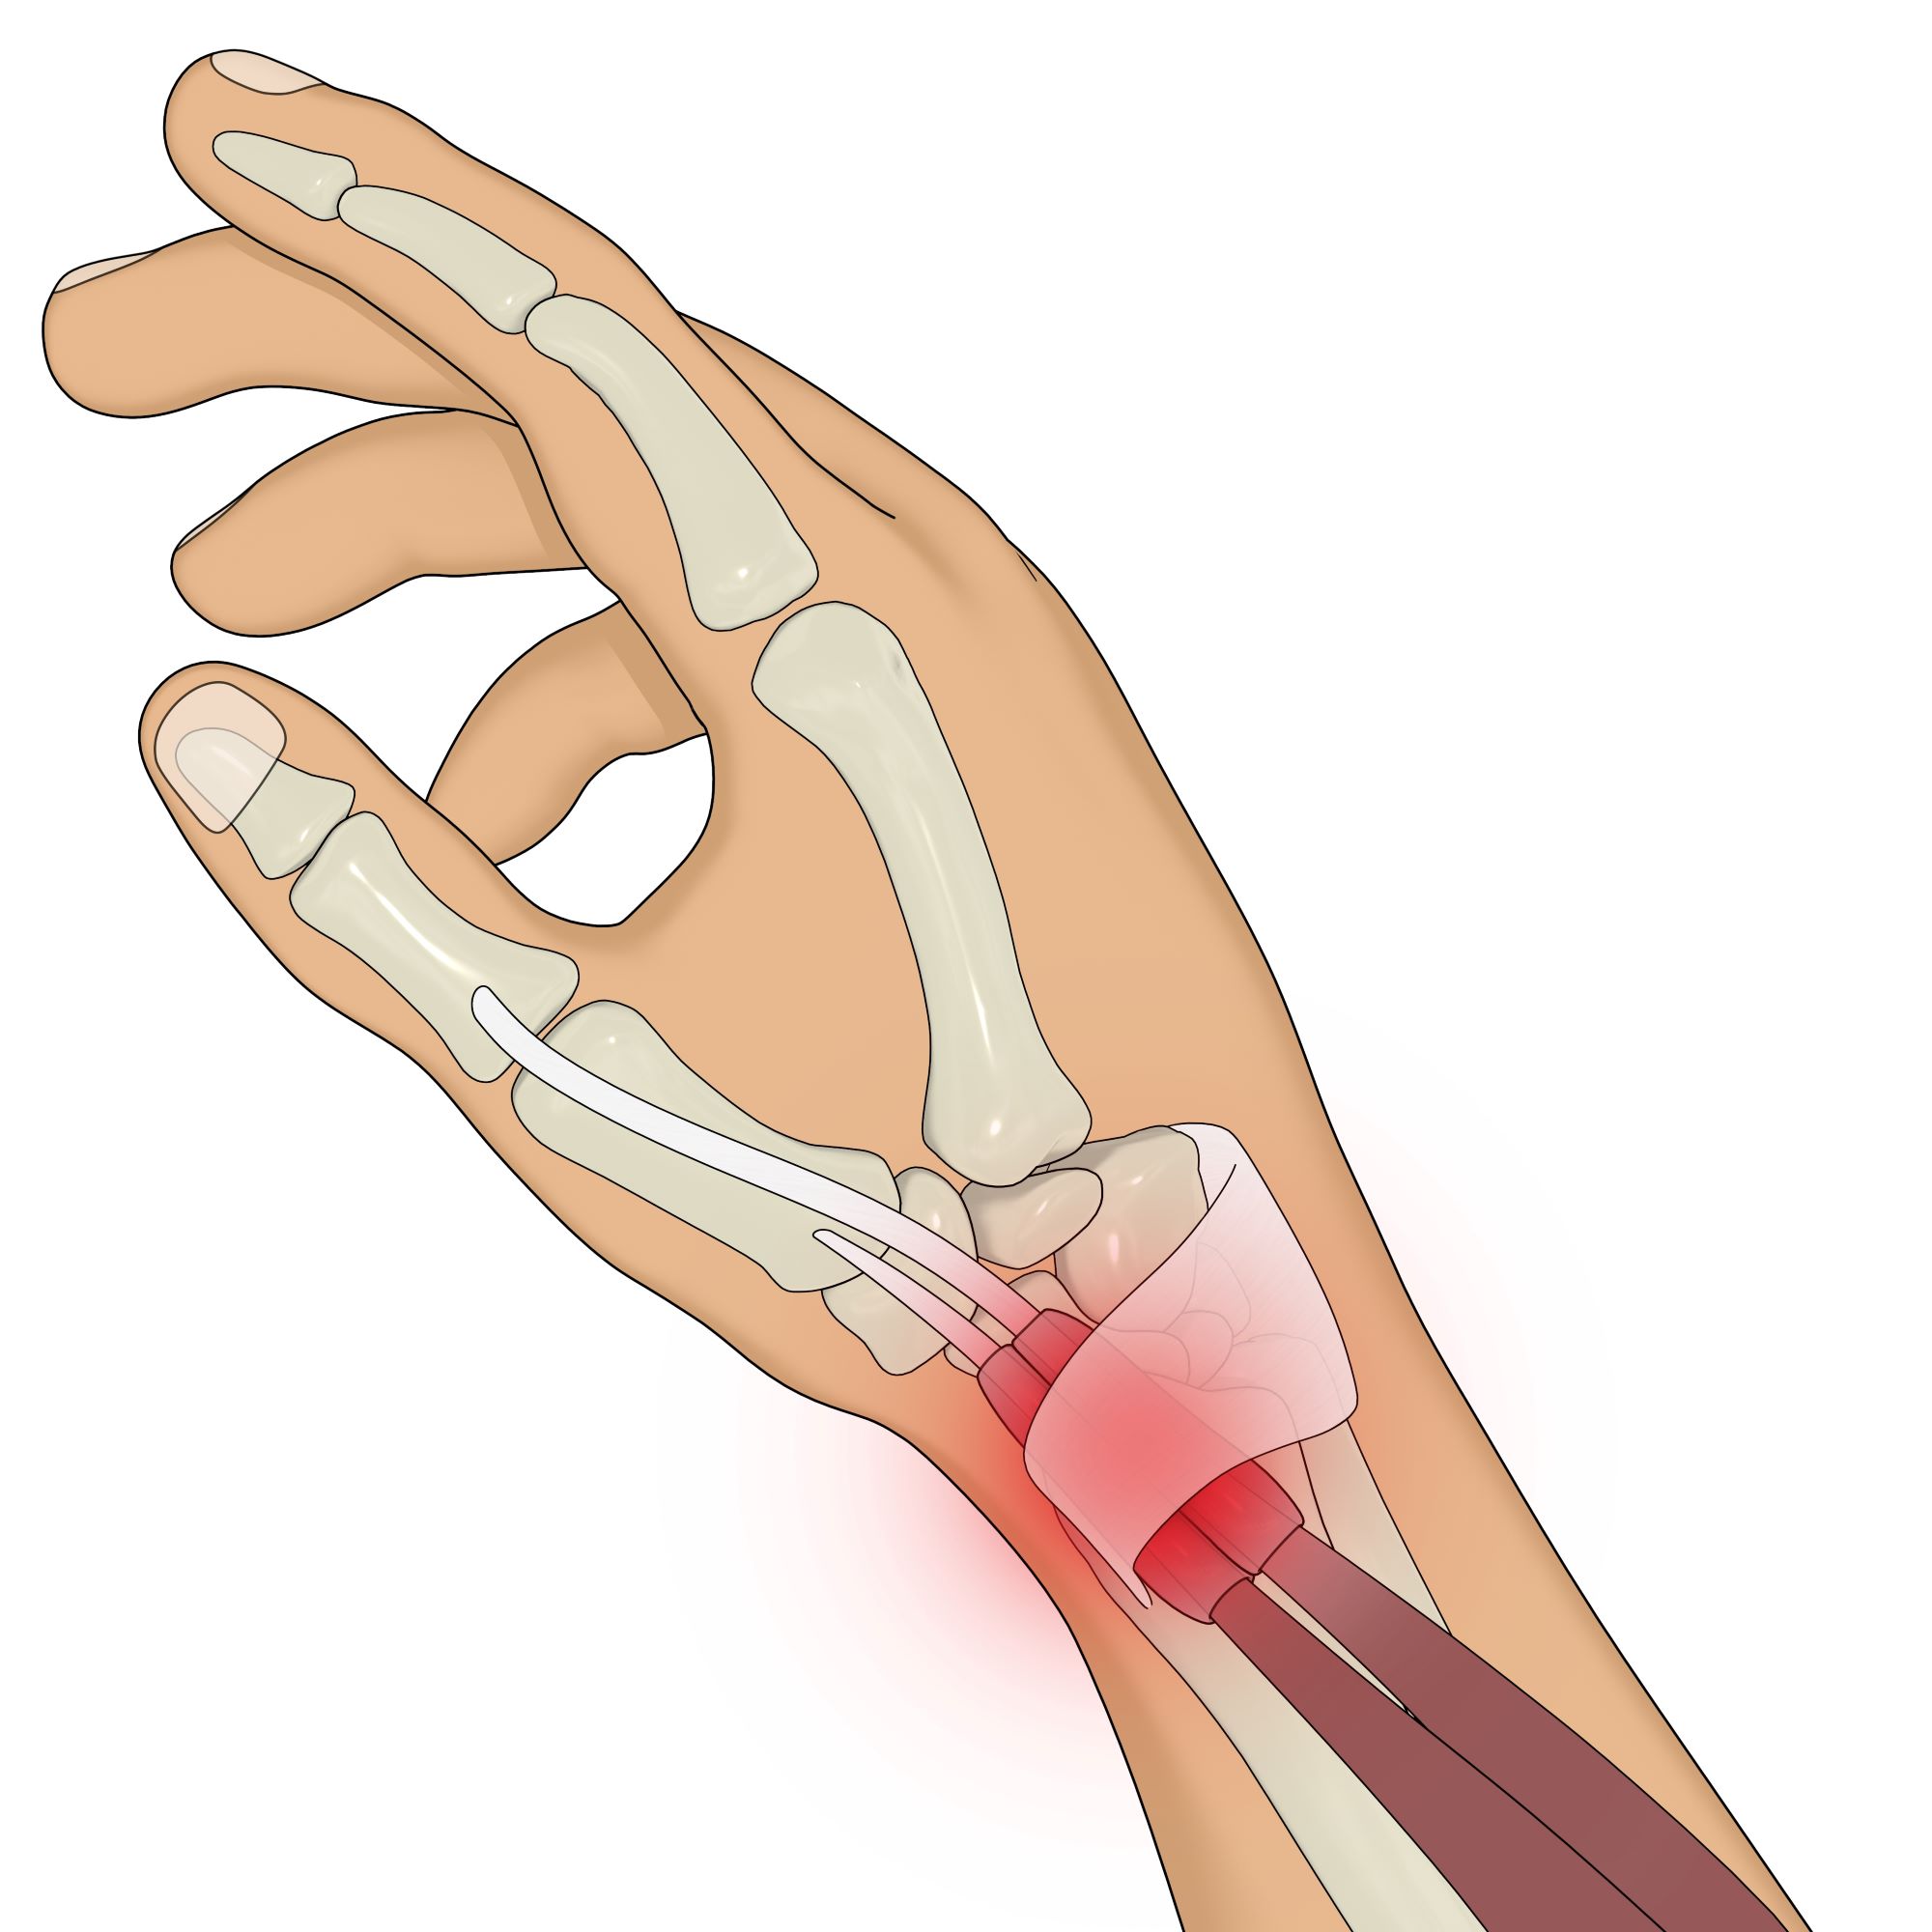 Tendinite du poignet : causes, symptômes et traitements